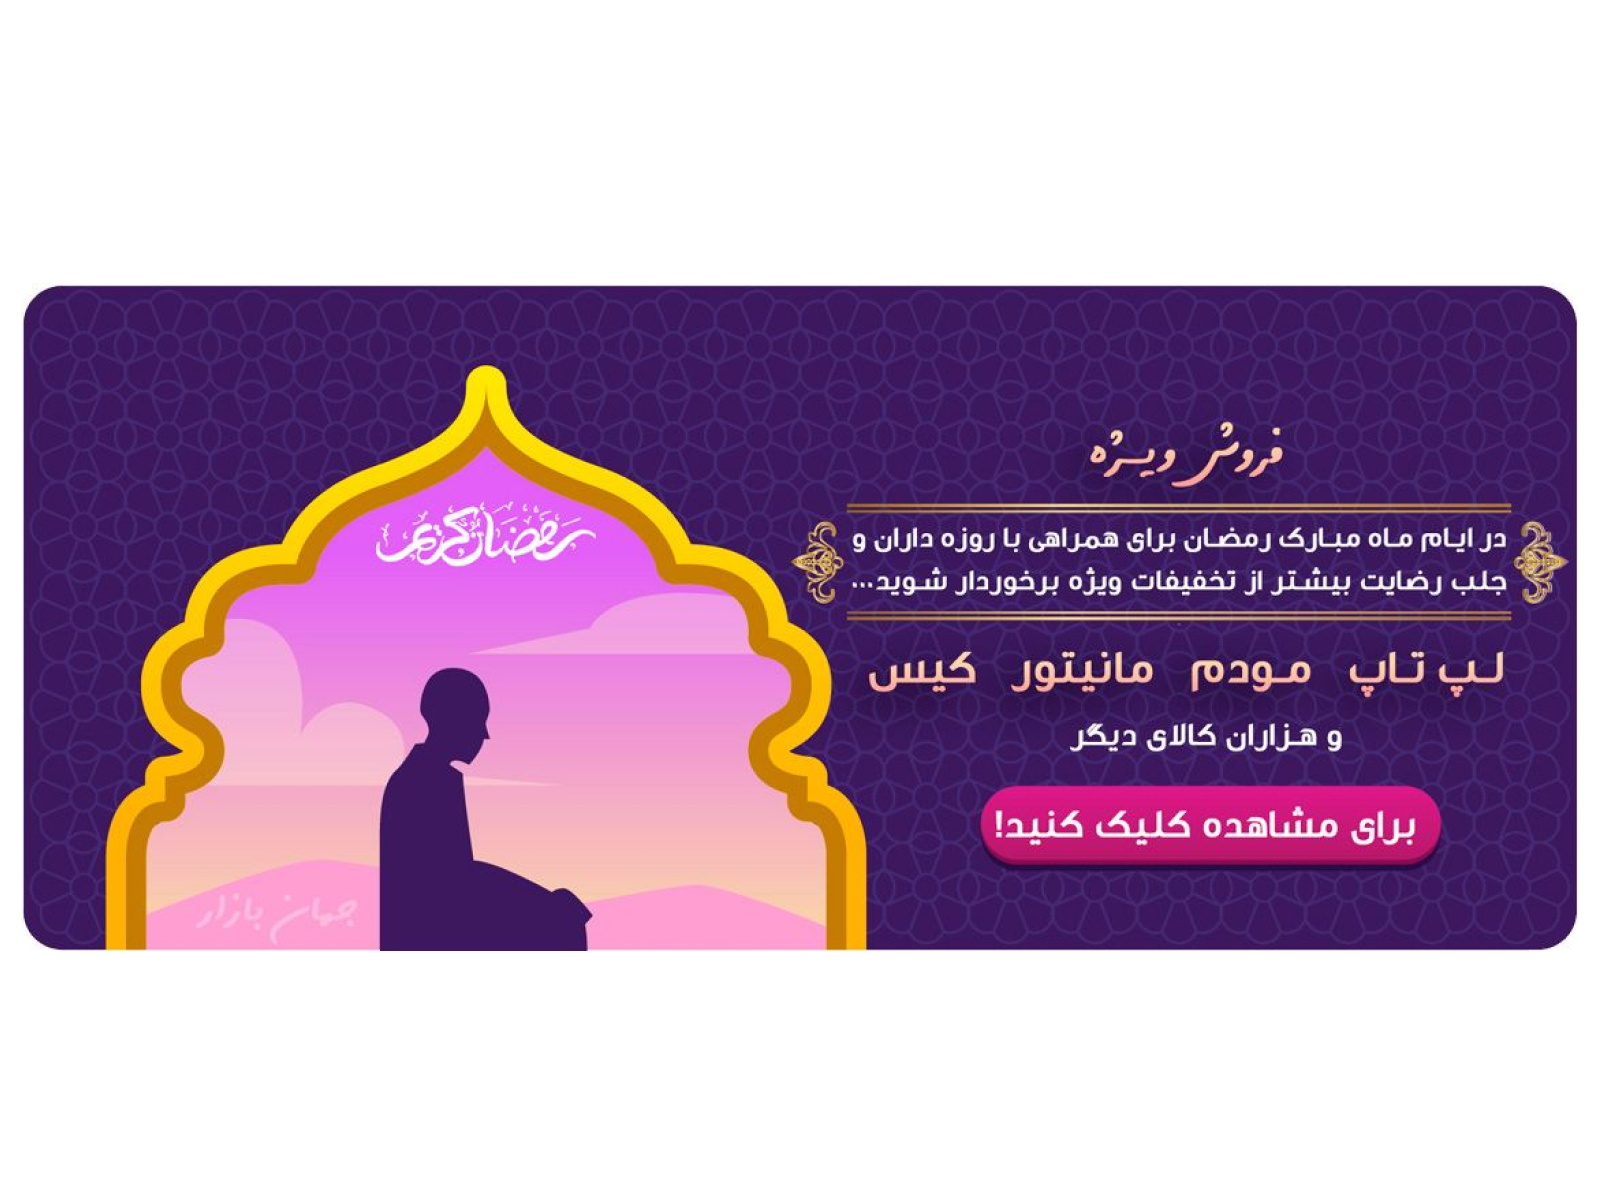 بنر فروش ویژه برای ایام رمضان - Special sale banner for Ramadan design graphic design photoshop ramadan special sale banner بنر فروشگاهی